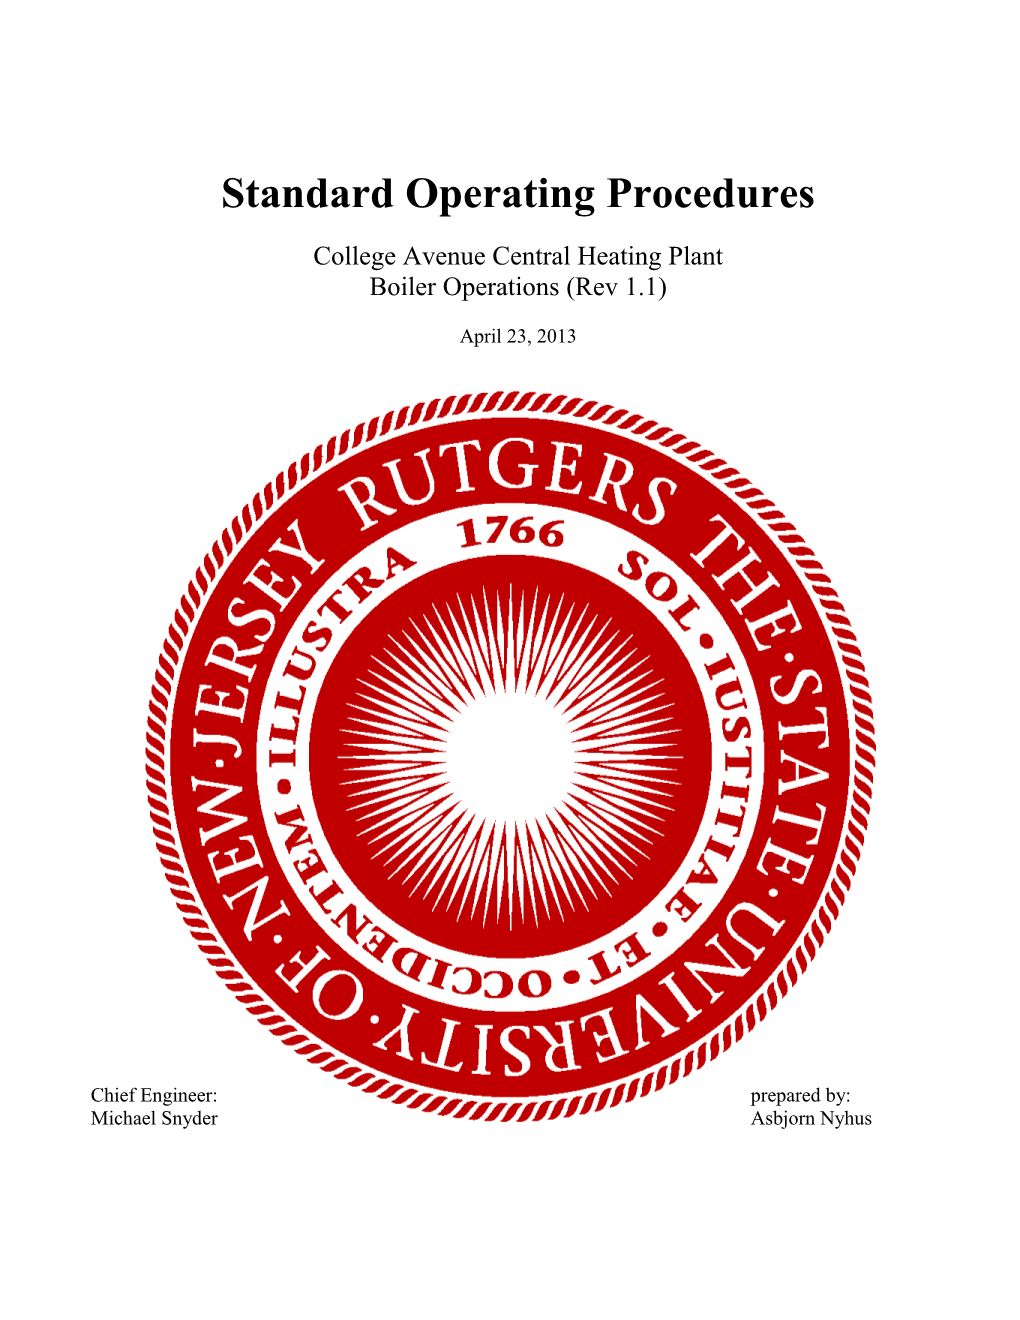 Standard Operating Procedures s8